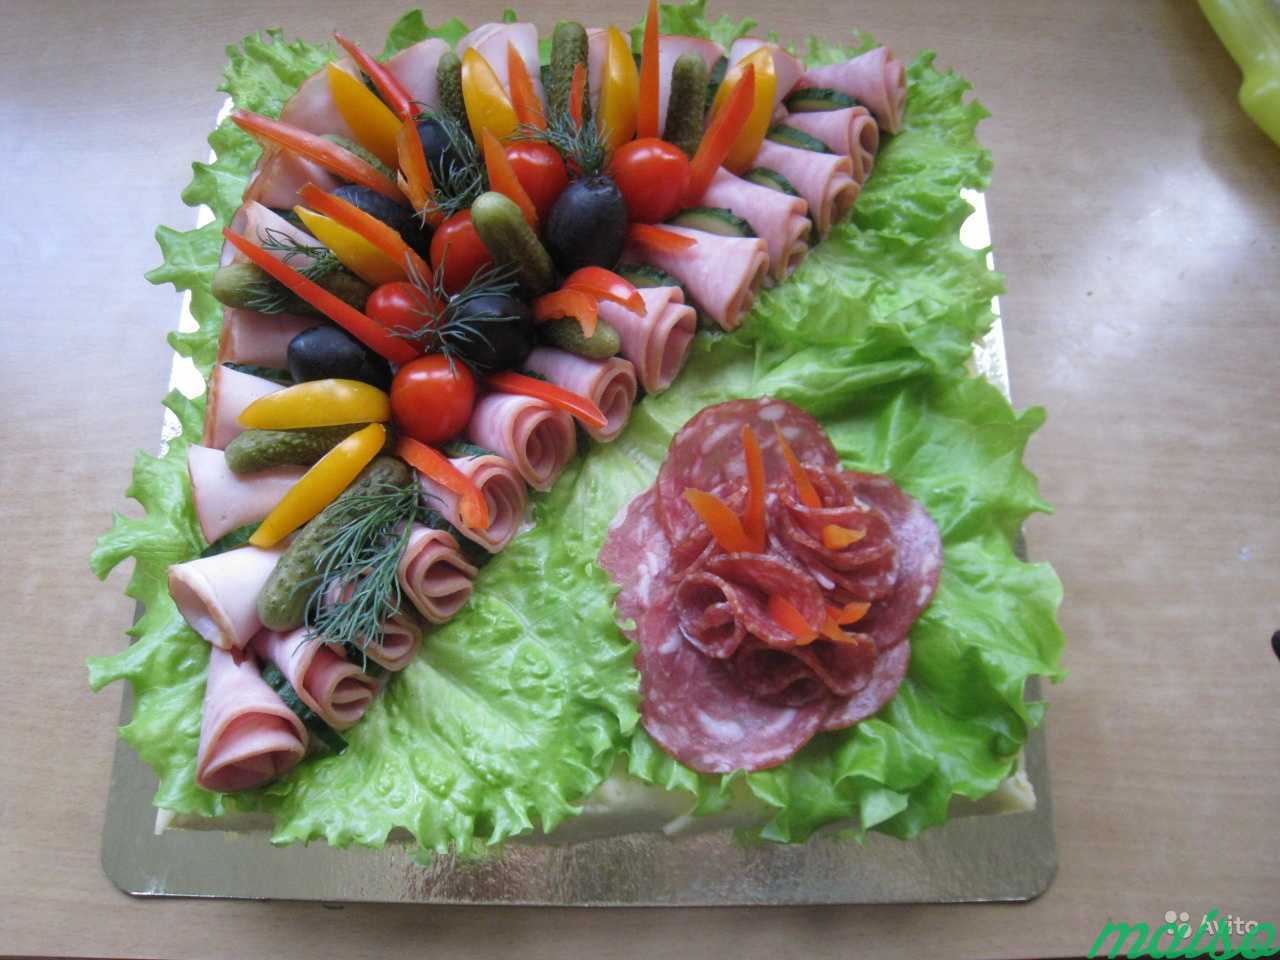 Мясные и рыбные торты на заказ к любому празднику в Санкт-Петербурге. Фото 11